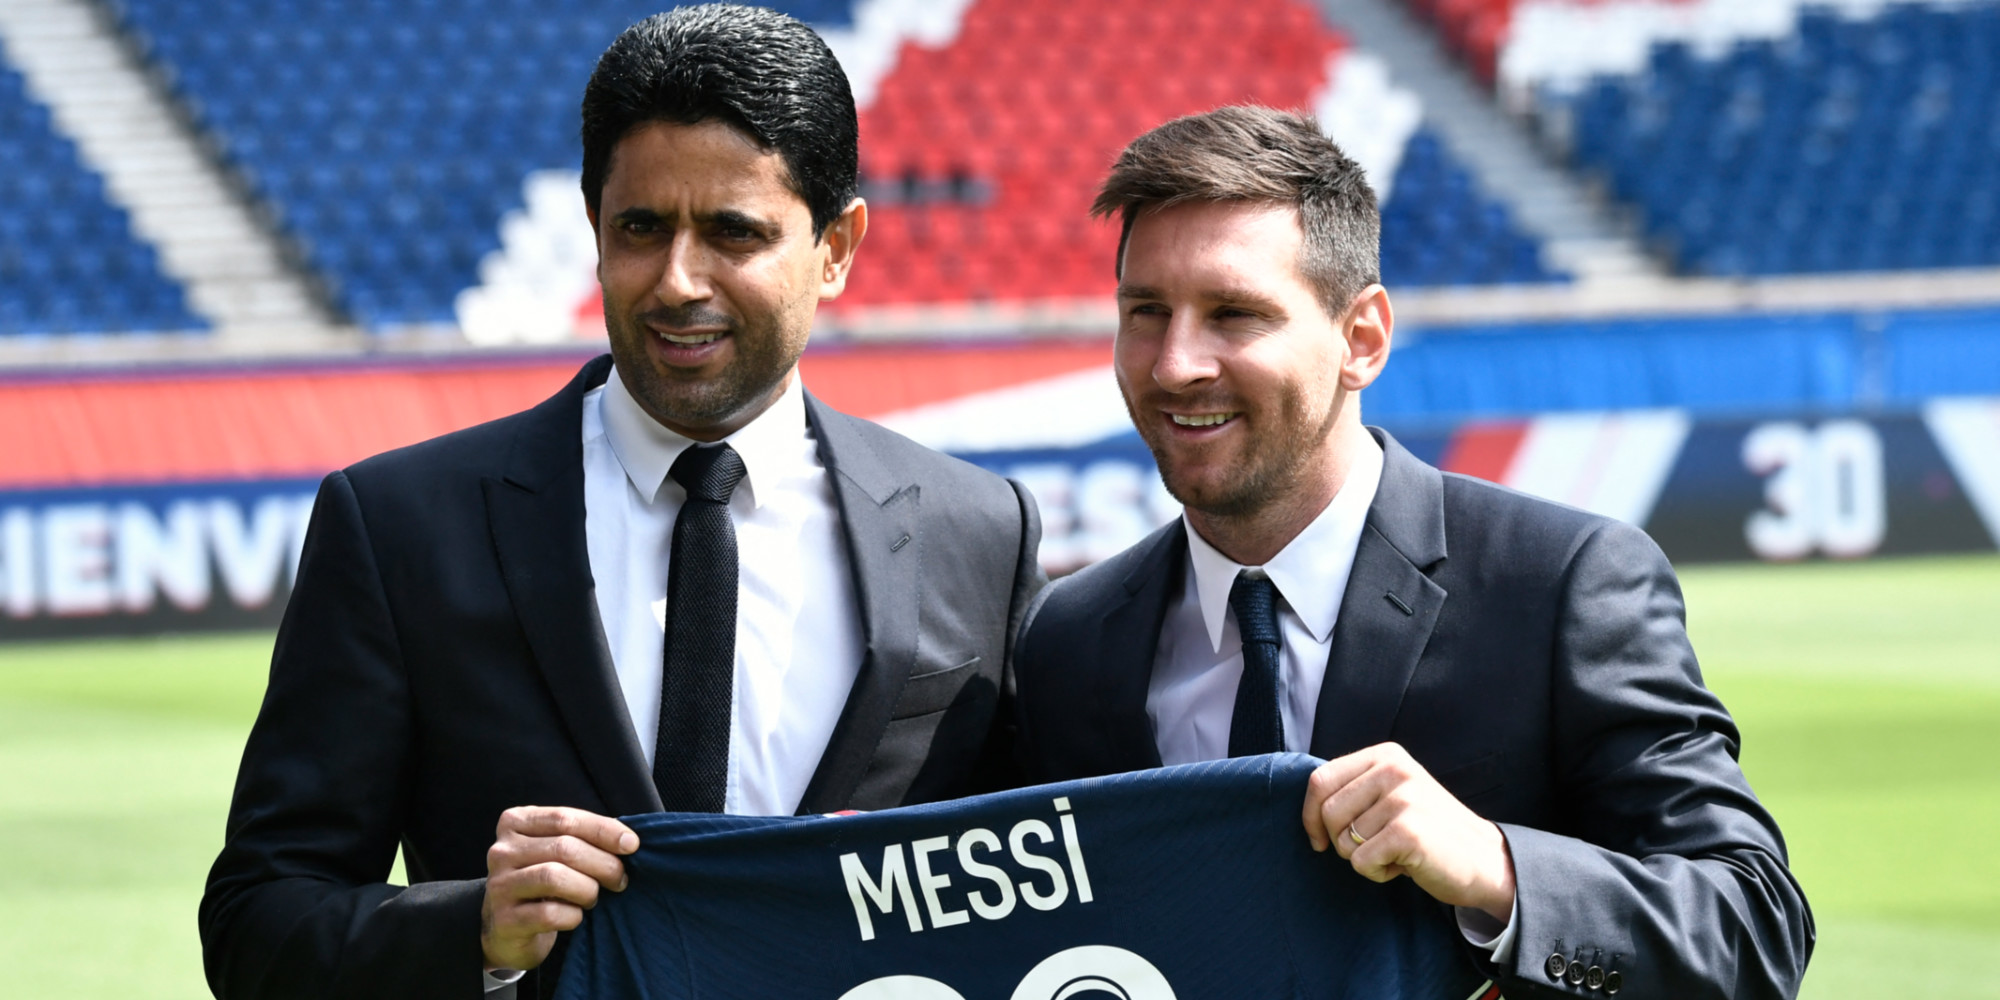 Messi au PSG le coup diplomatique du Qatar avant le Mondial 2022